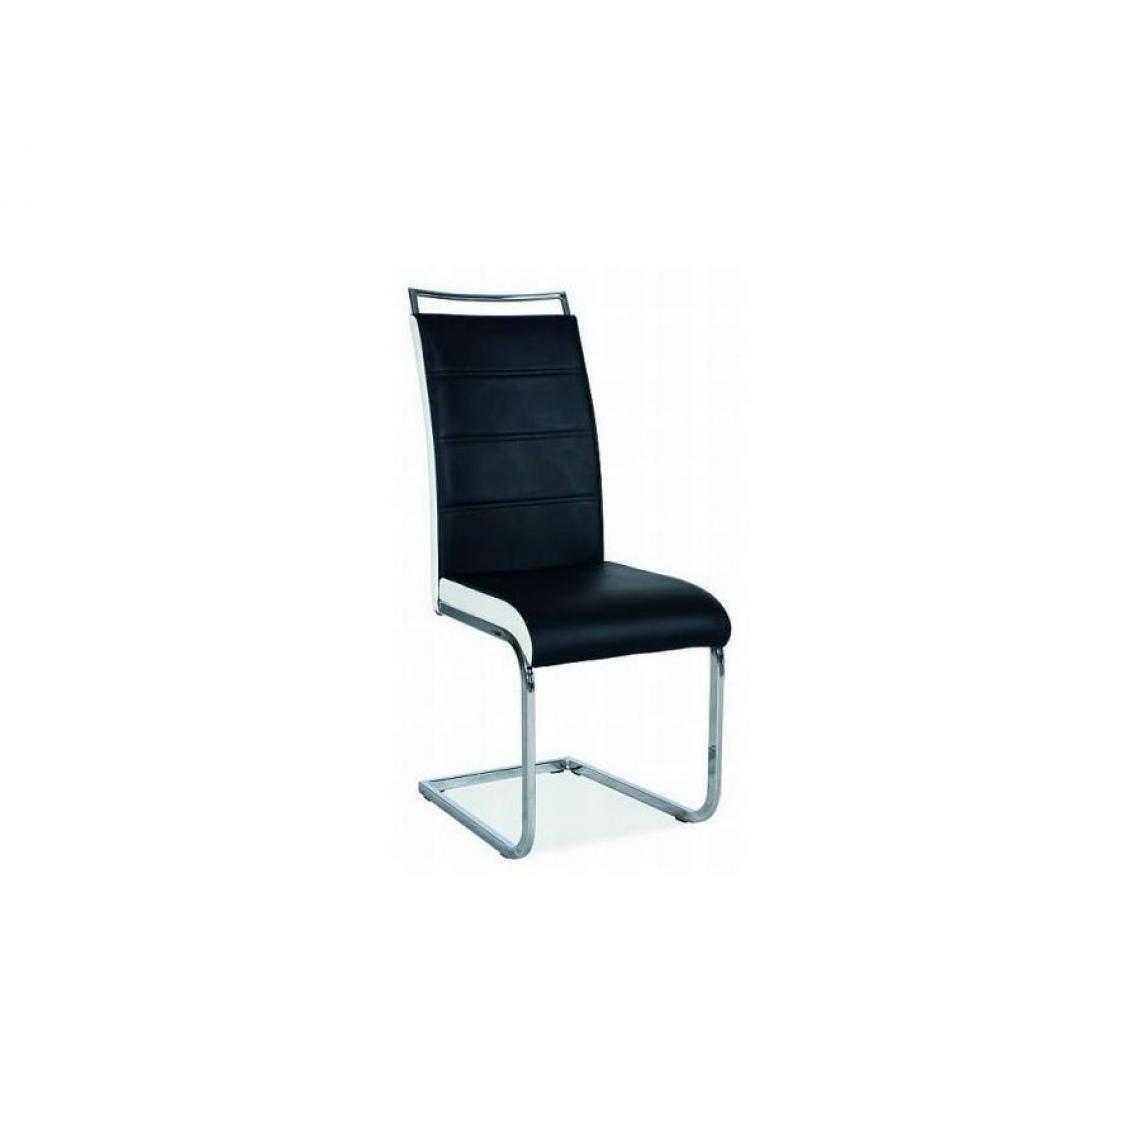 Hucoco - SHYRA | Chaise bicolore style moderne | Dimensions 102x41x42 cm | Rembourrage en cuir écologique | Chaise salle à manger - Noir - Chaises